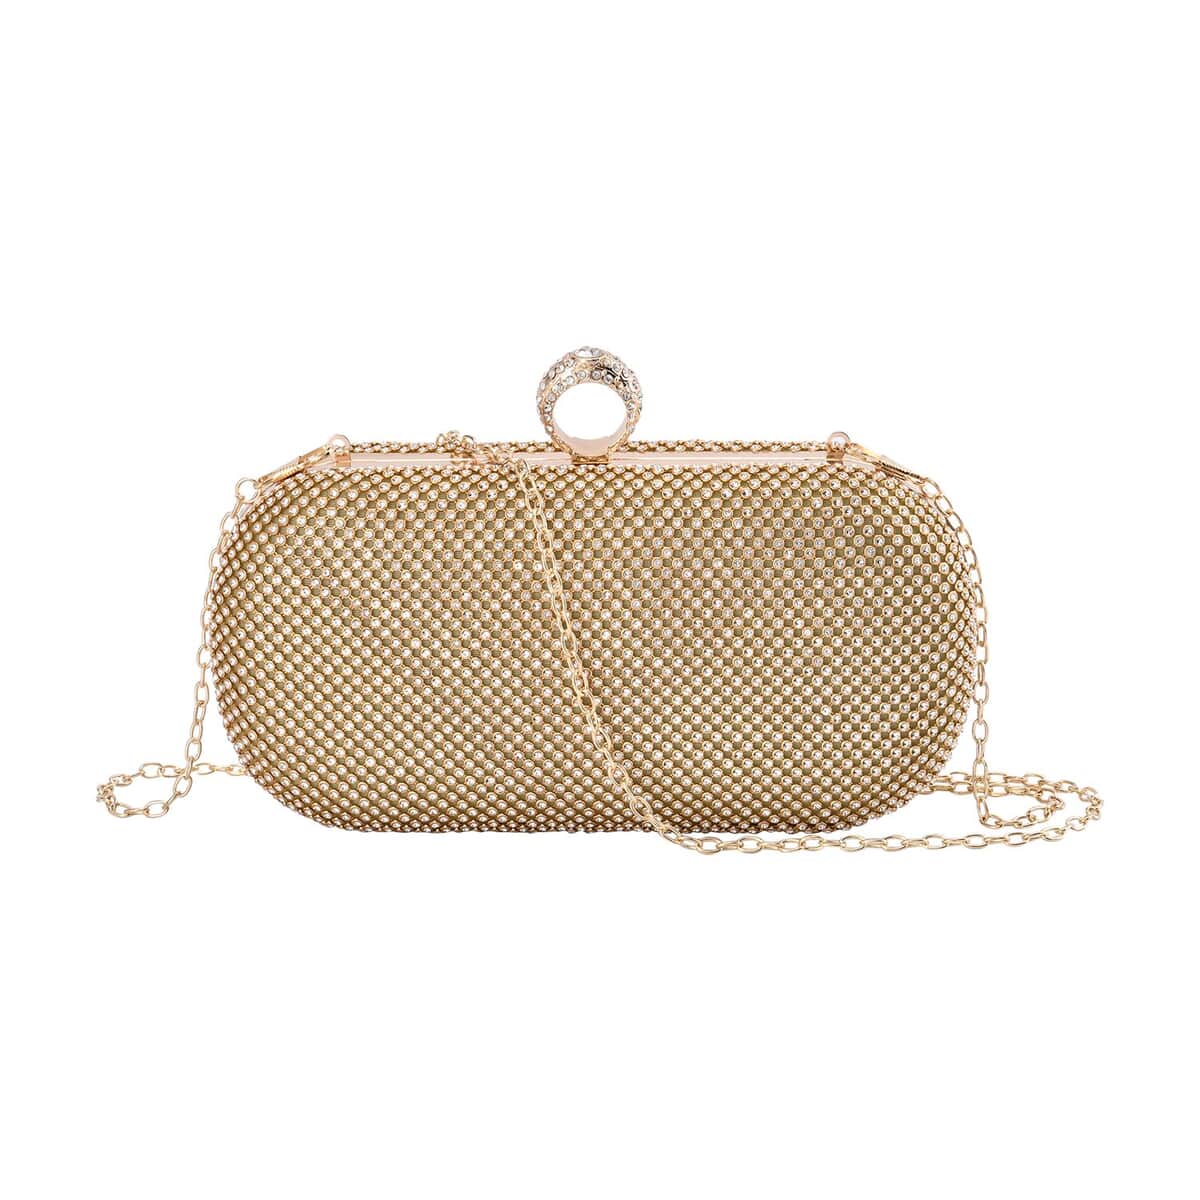 Gold Color Sparkling Crystal Clutch Bag with Shoulder Strap image number 0